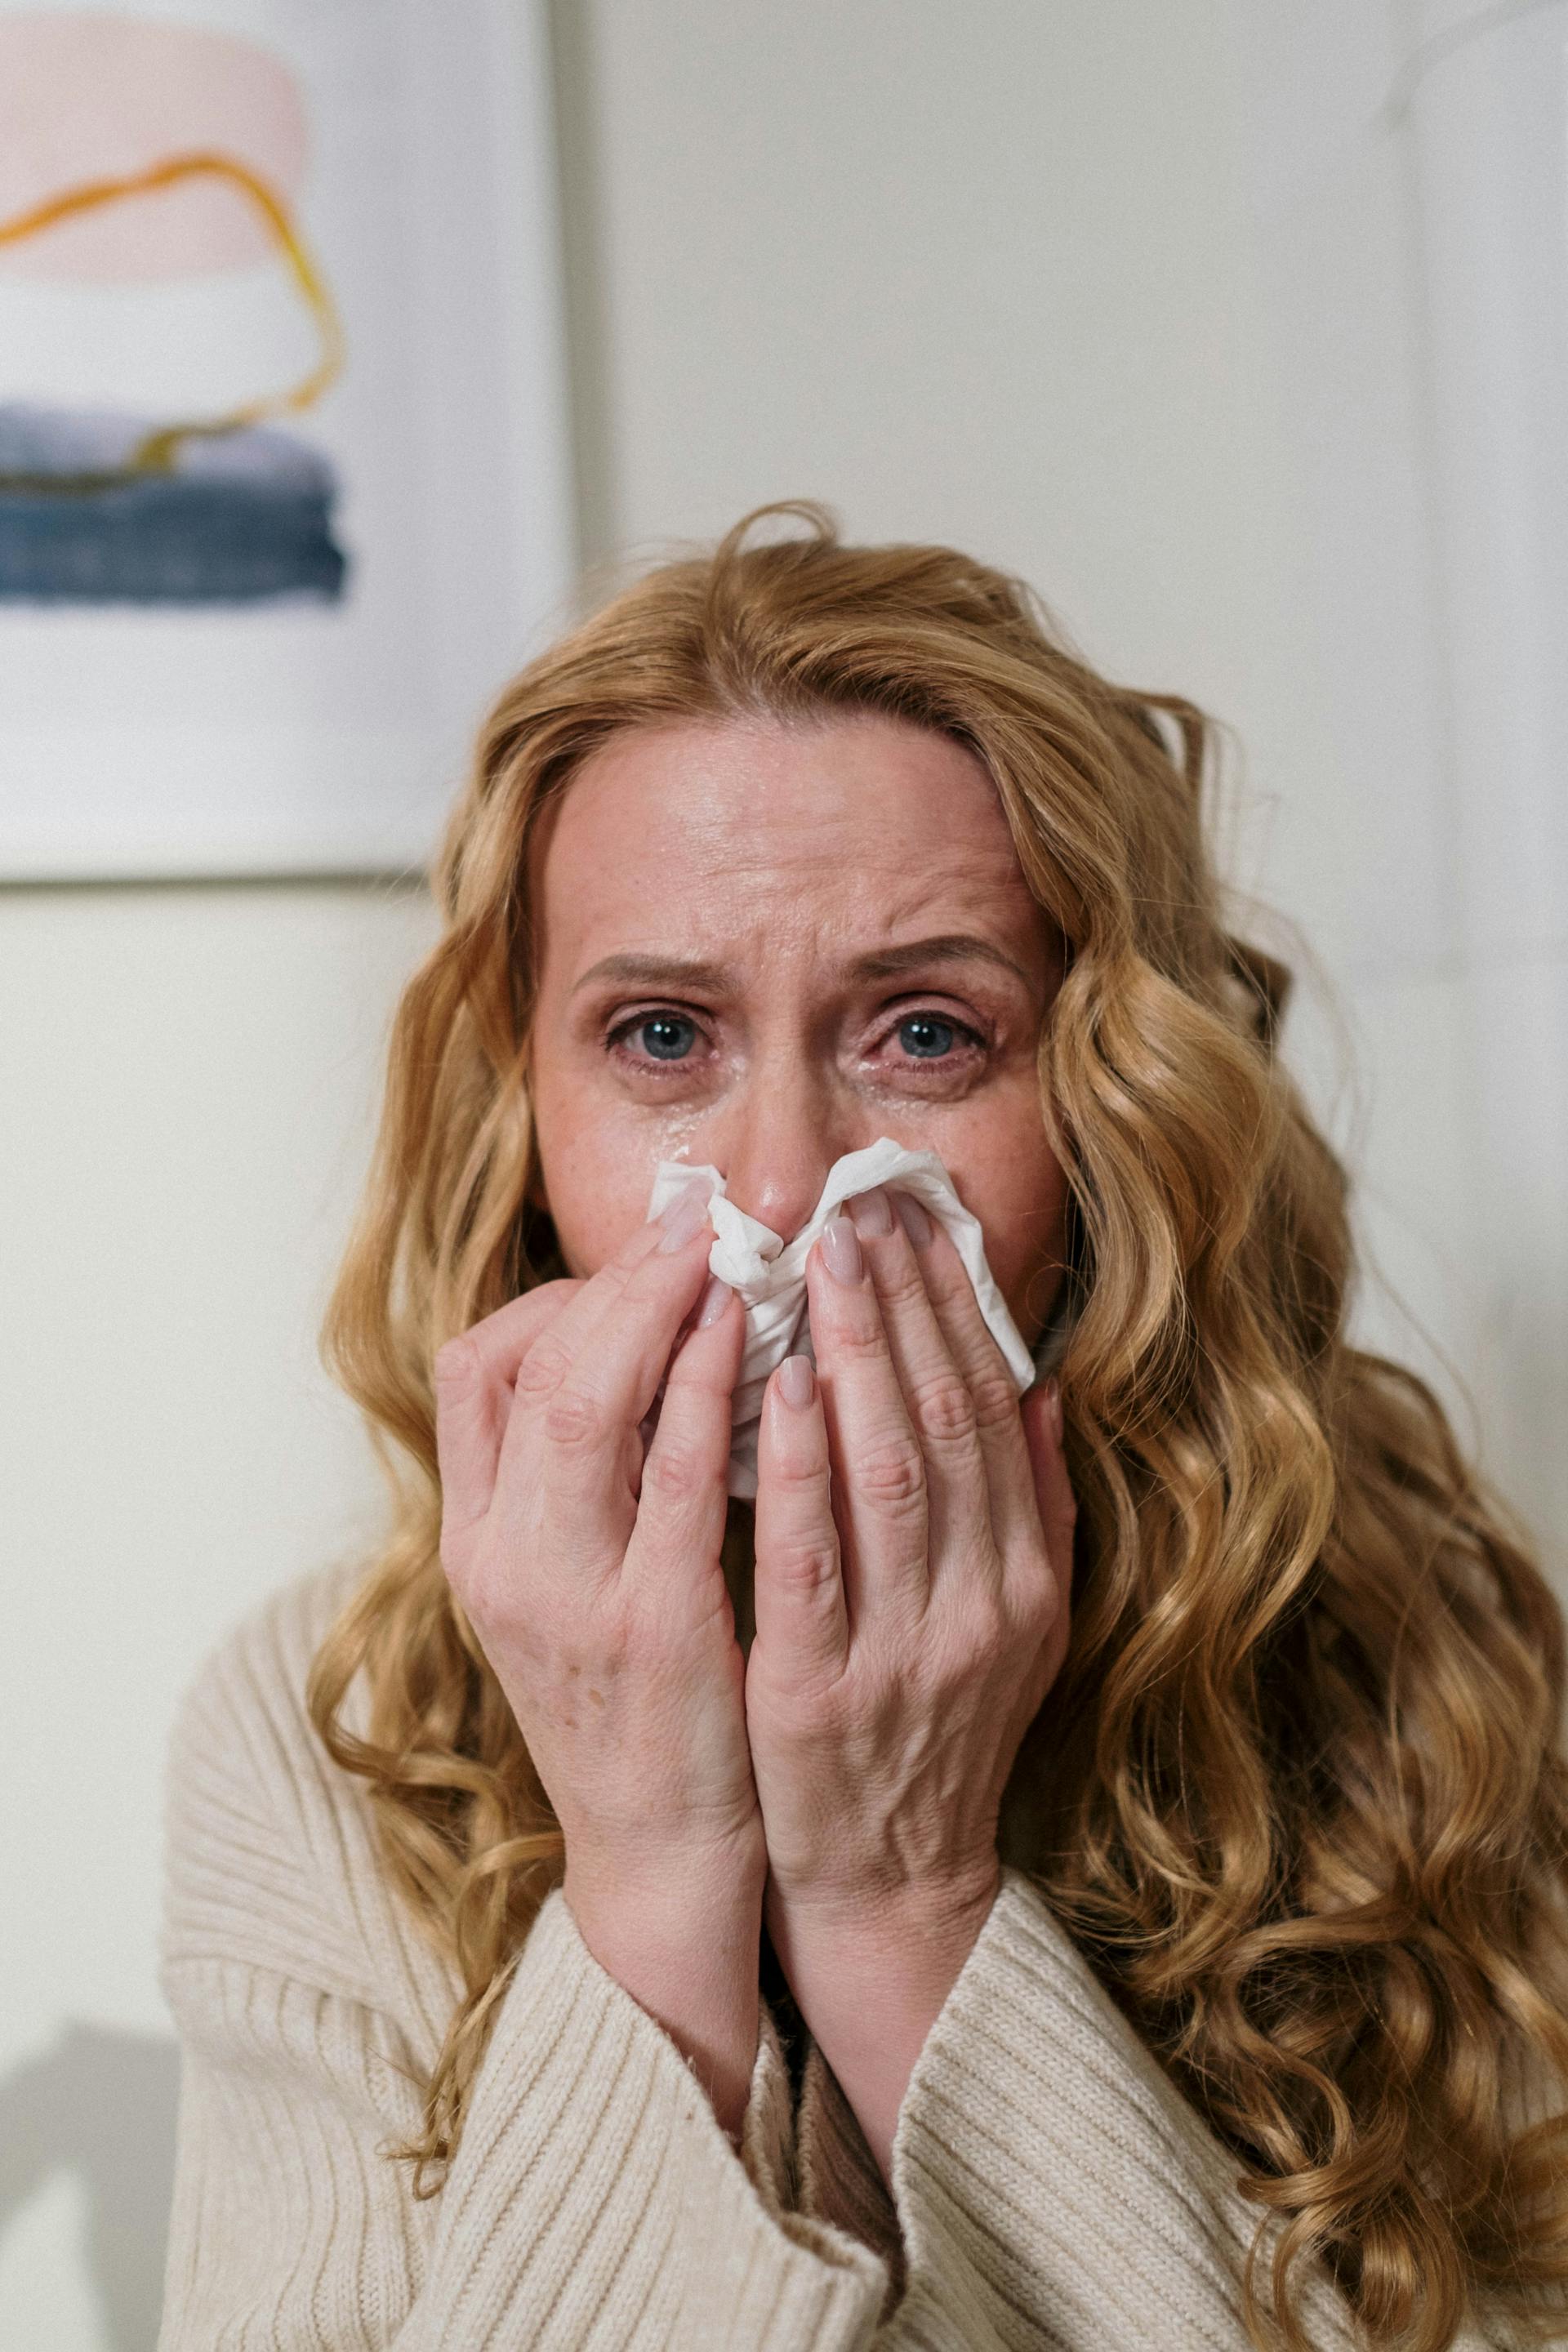 Une femme s'essuie le nez avec un mouchoir en pleurant | Source : Pexels